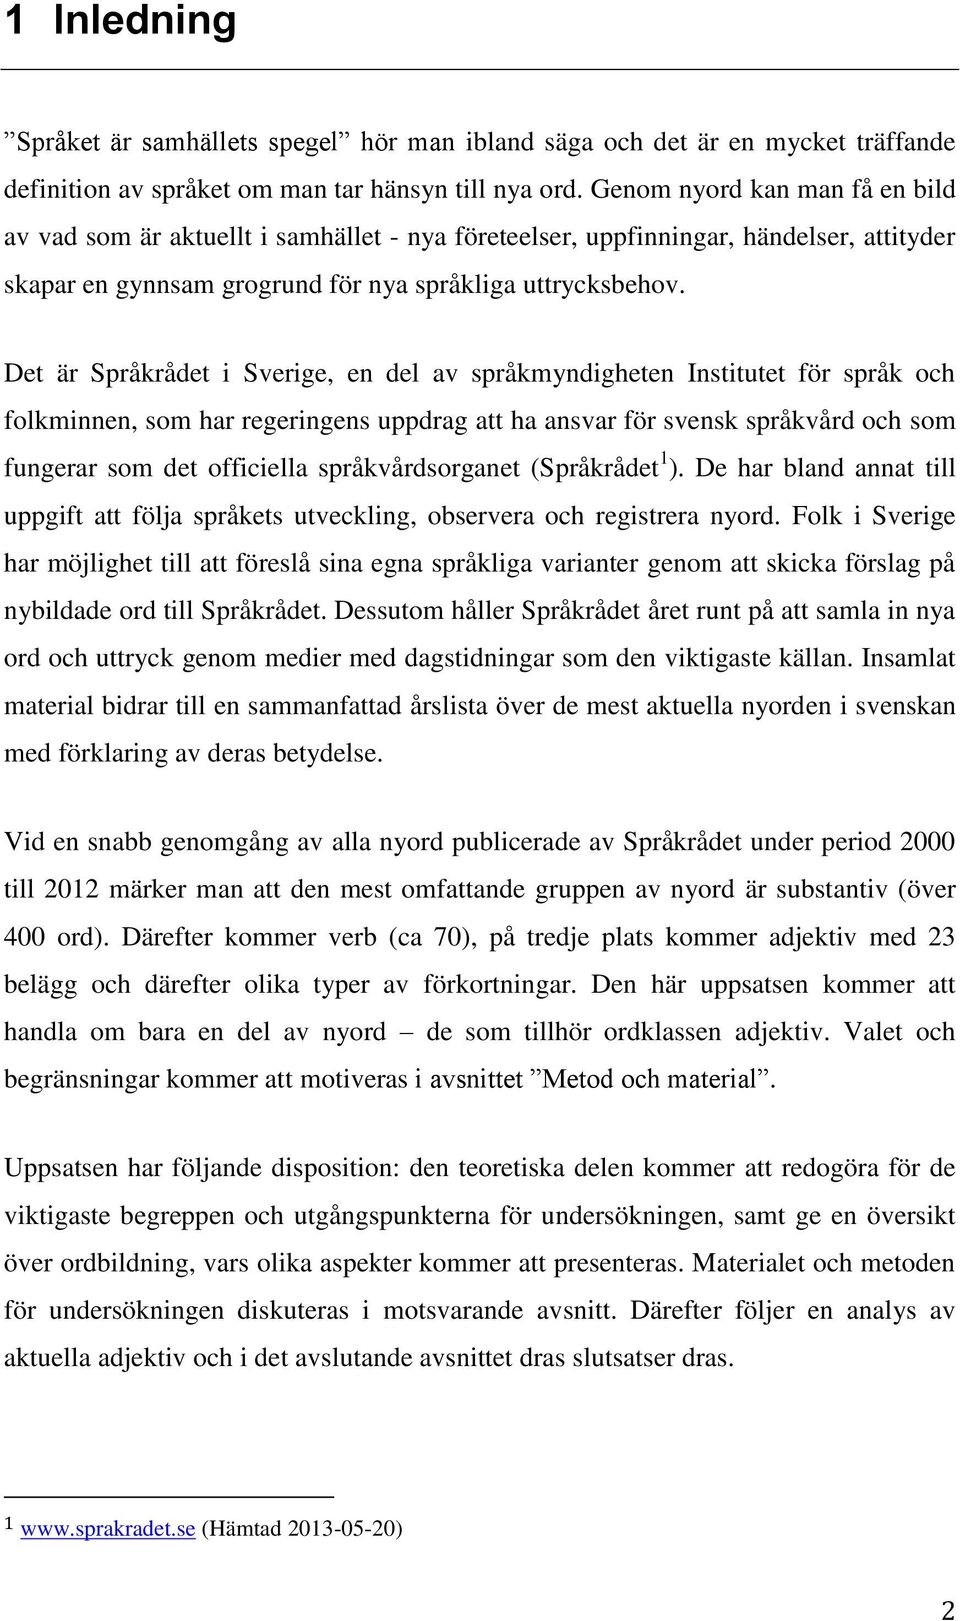 Det är Språkrådet i Sverige, en del av språkmyndigheten Institutet för språk och folkminnen, som har regeringens uppdrag att ha ansvar för svensk språkvård och som fungerar som det officiella